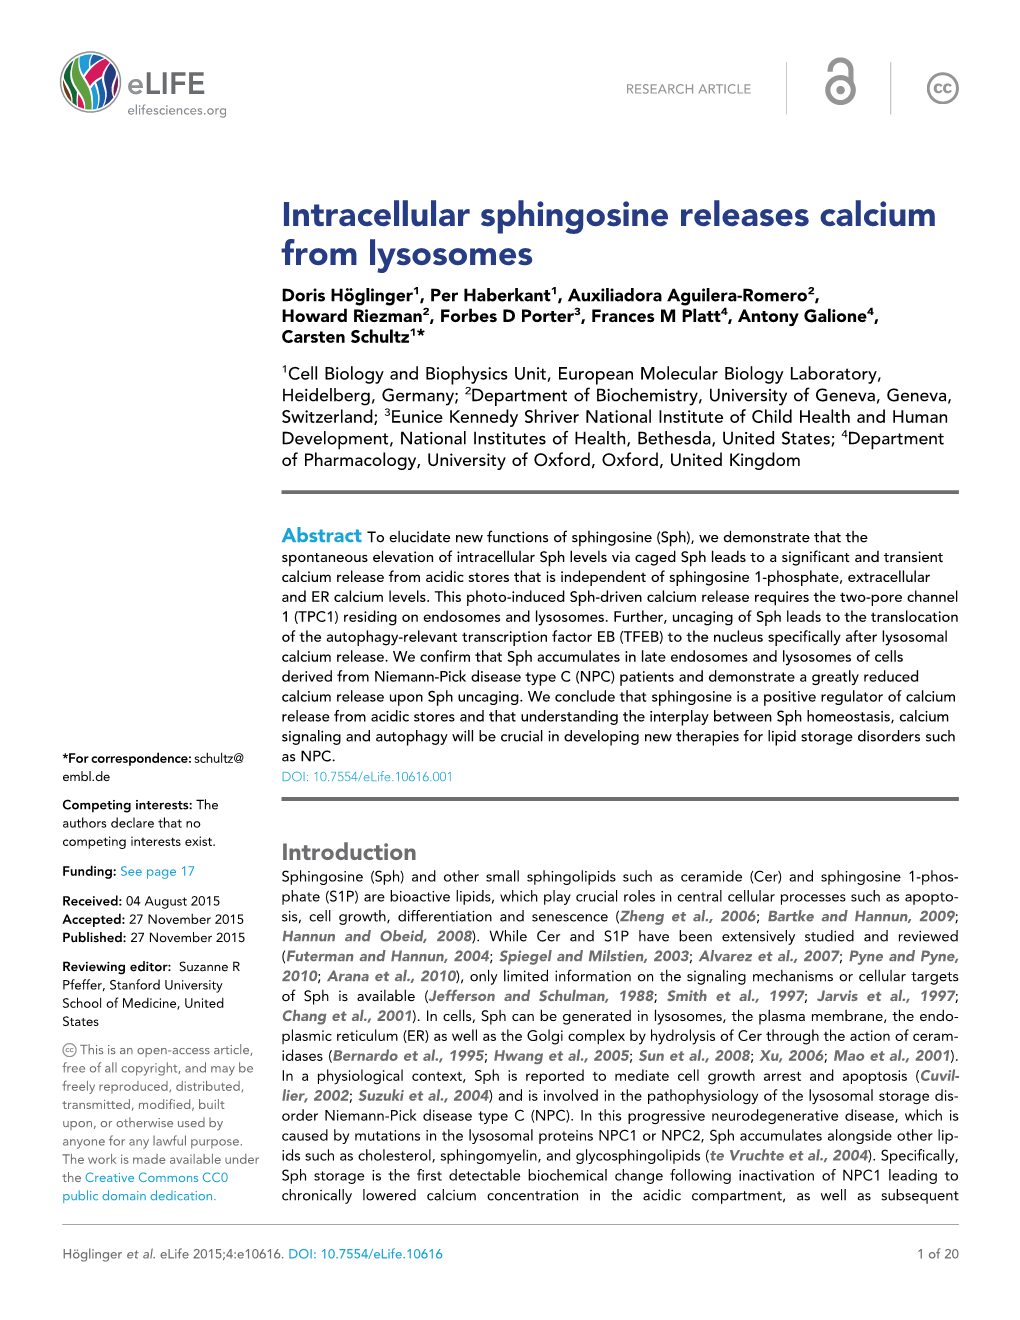 Intracellular Sphingosine Releases Calcium from Lysosomes